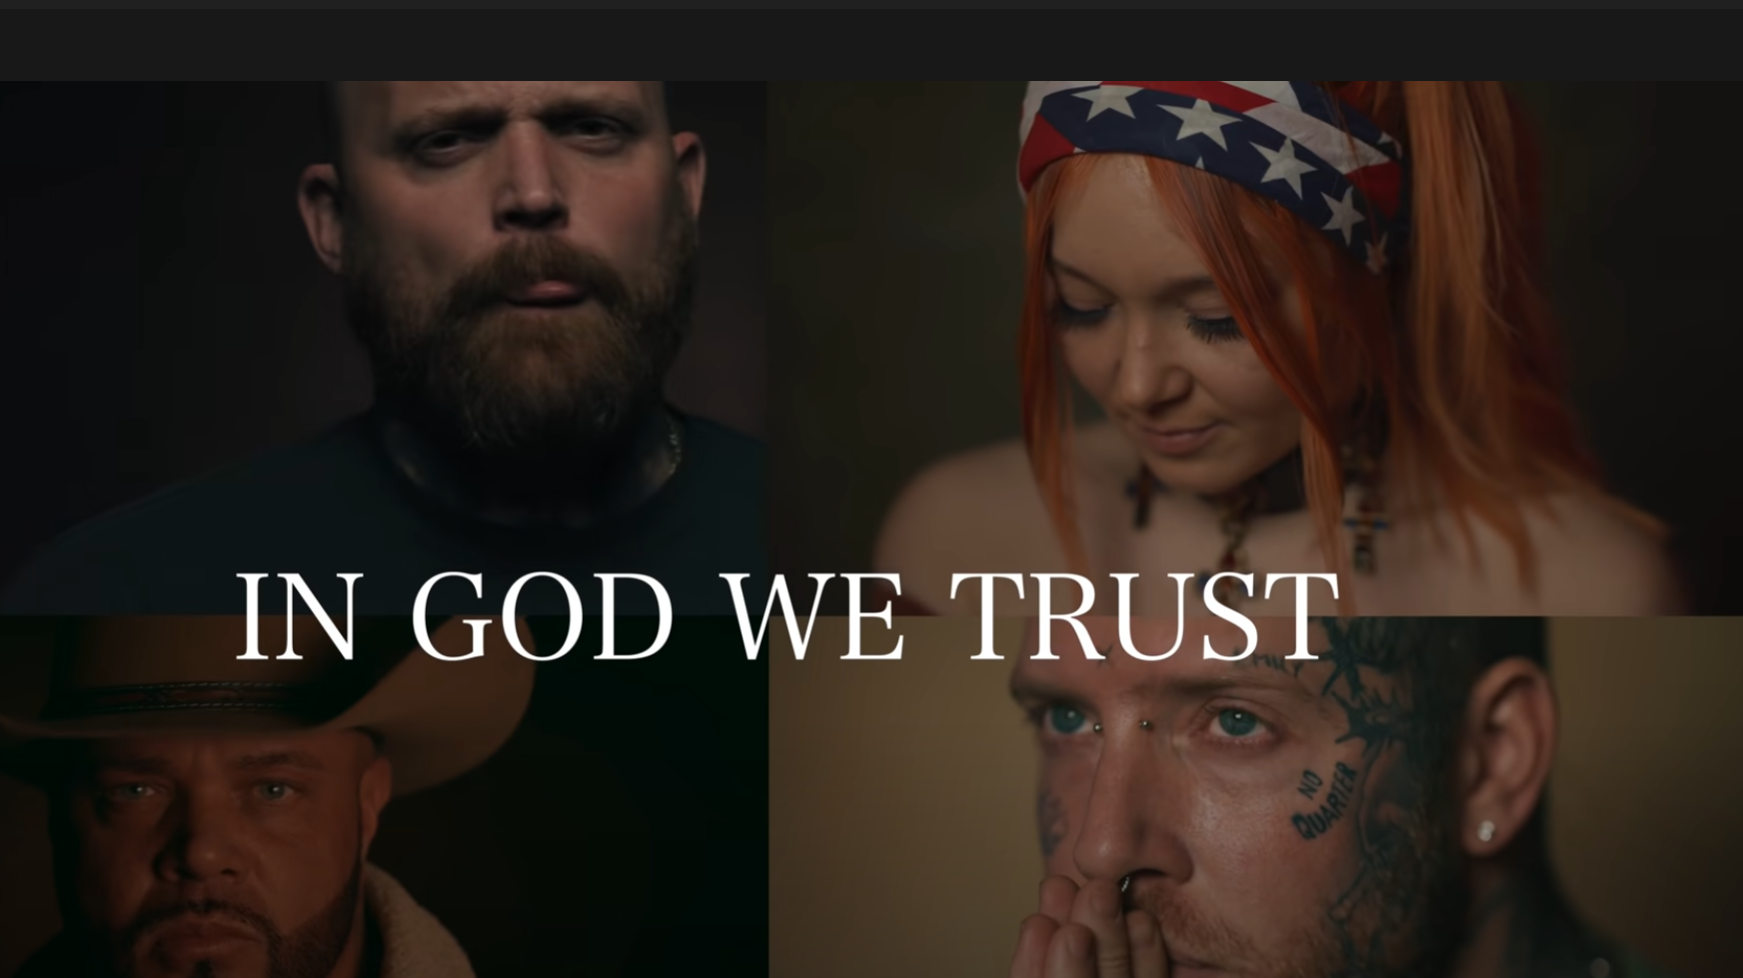  IN GOD WE TRUST